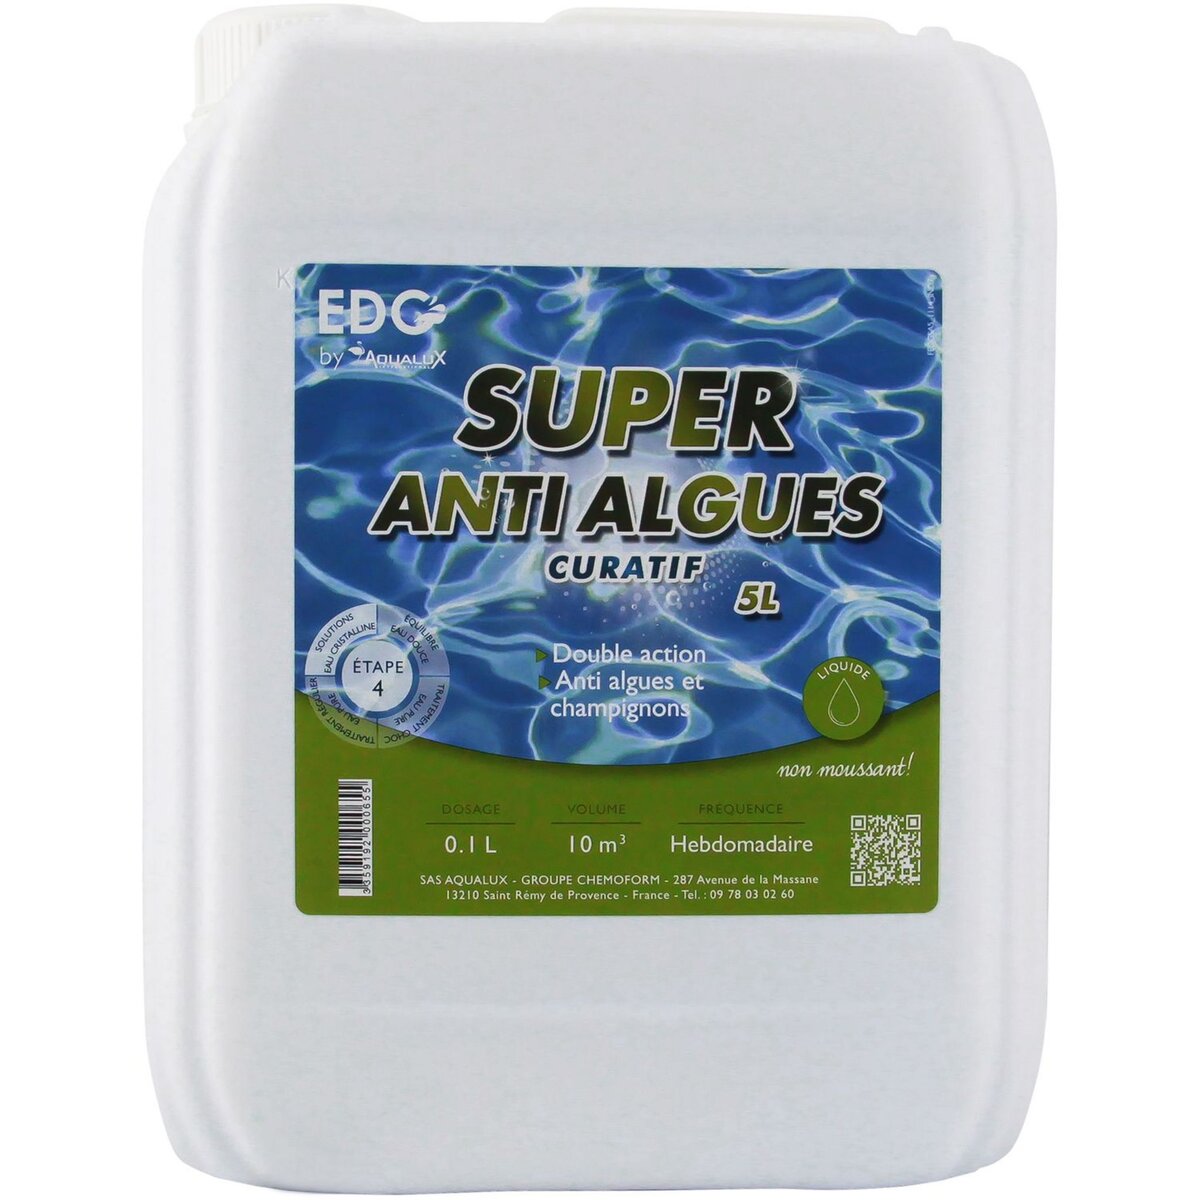 EDG By Aqualux Super Anti-Algues curatif - Bidon 5L